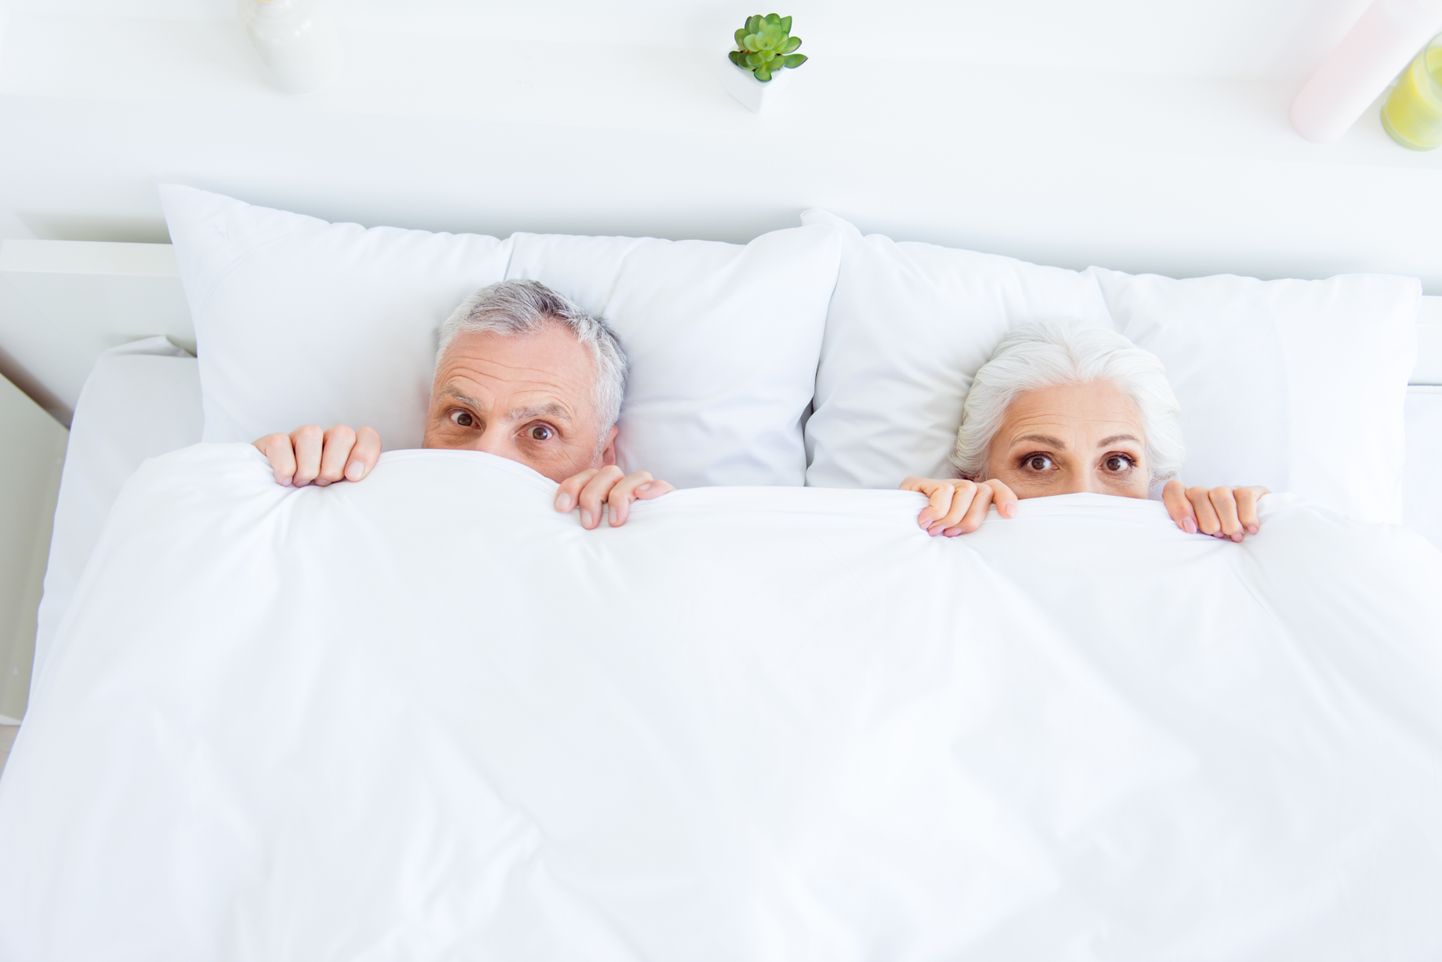 Пожилая пара в постели. Фото иллюстративное к статье.